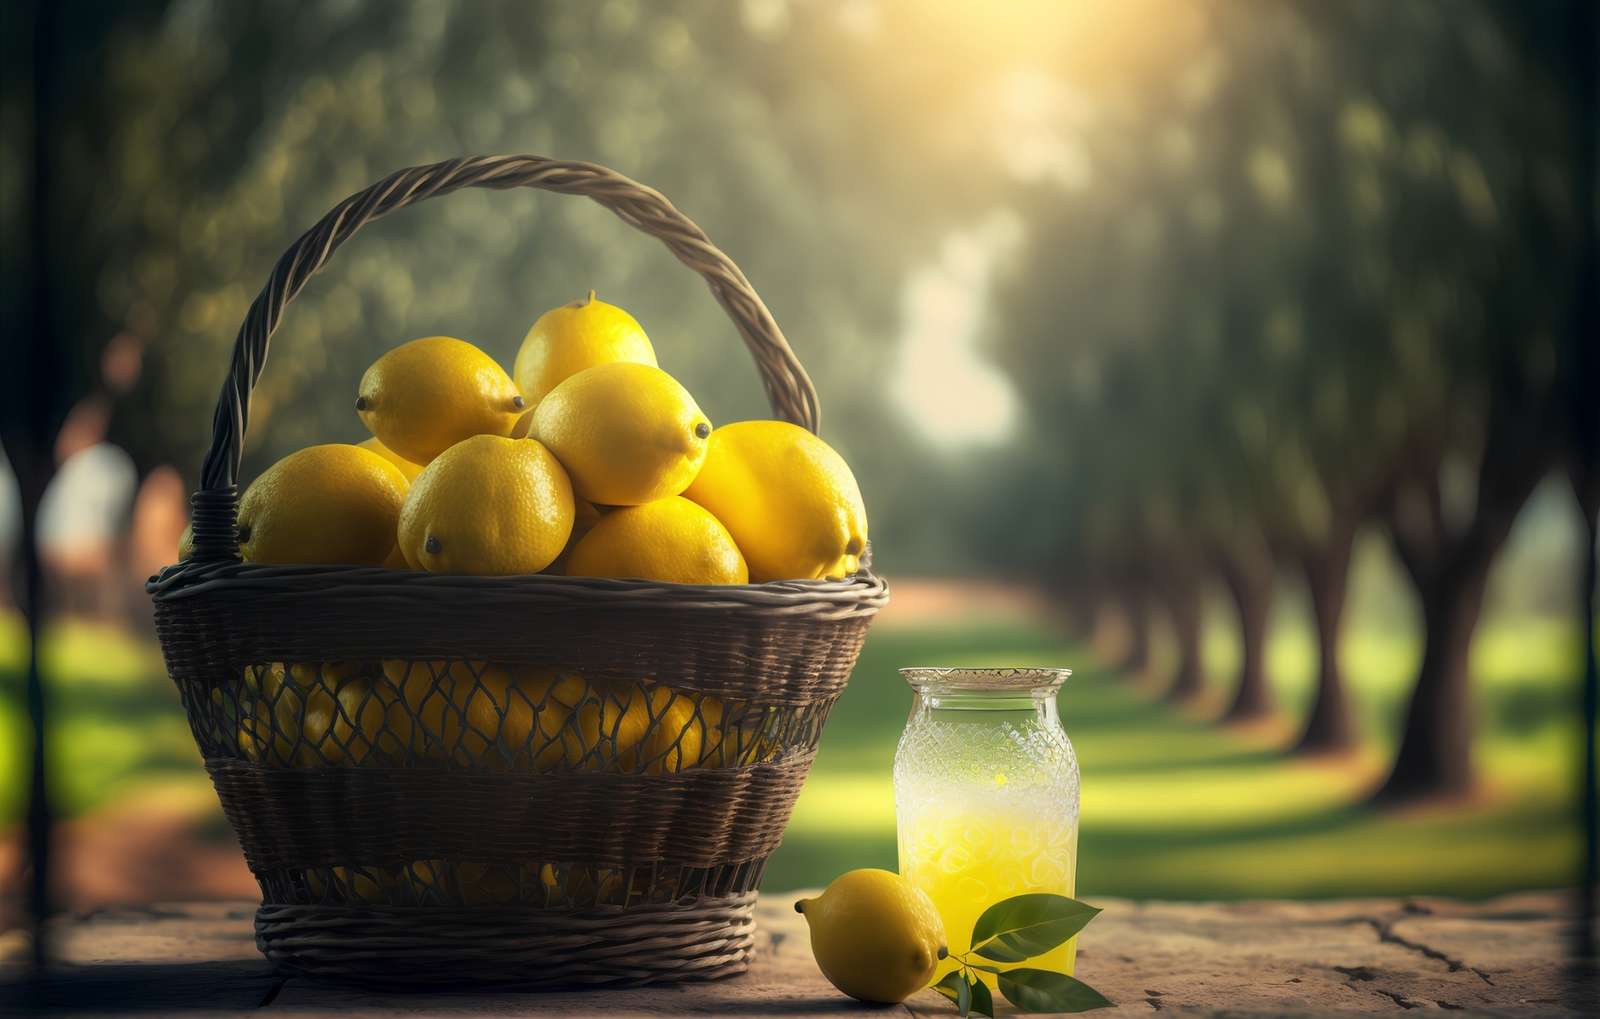 Корзина с лимонами рядом с банкой сока онлайн-пазл